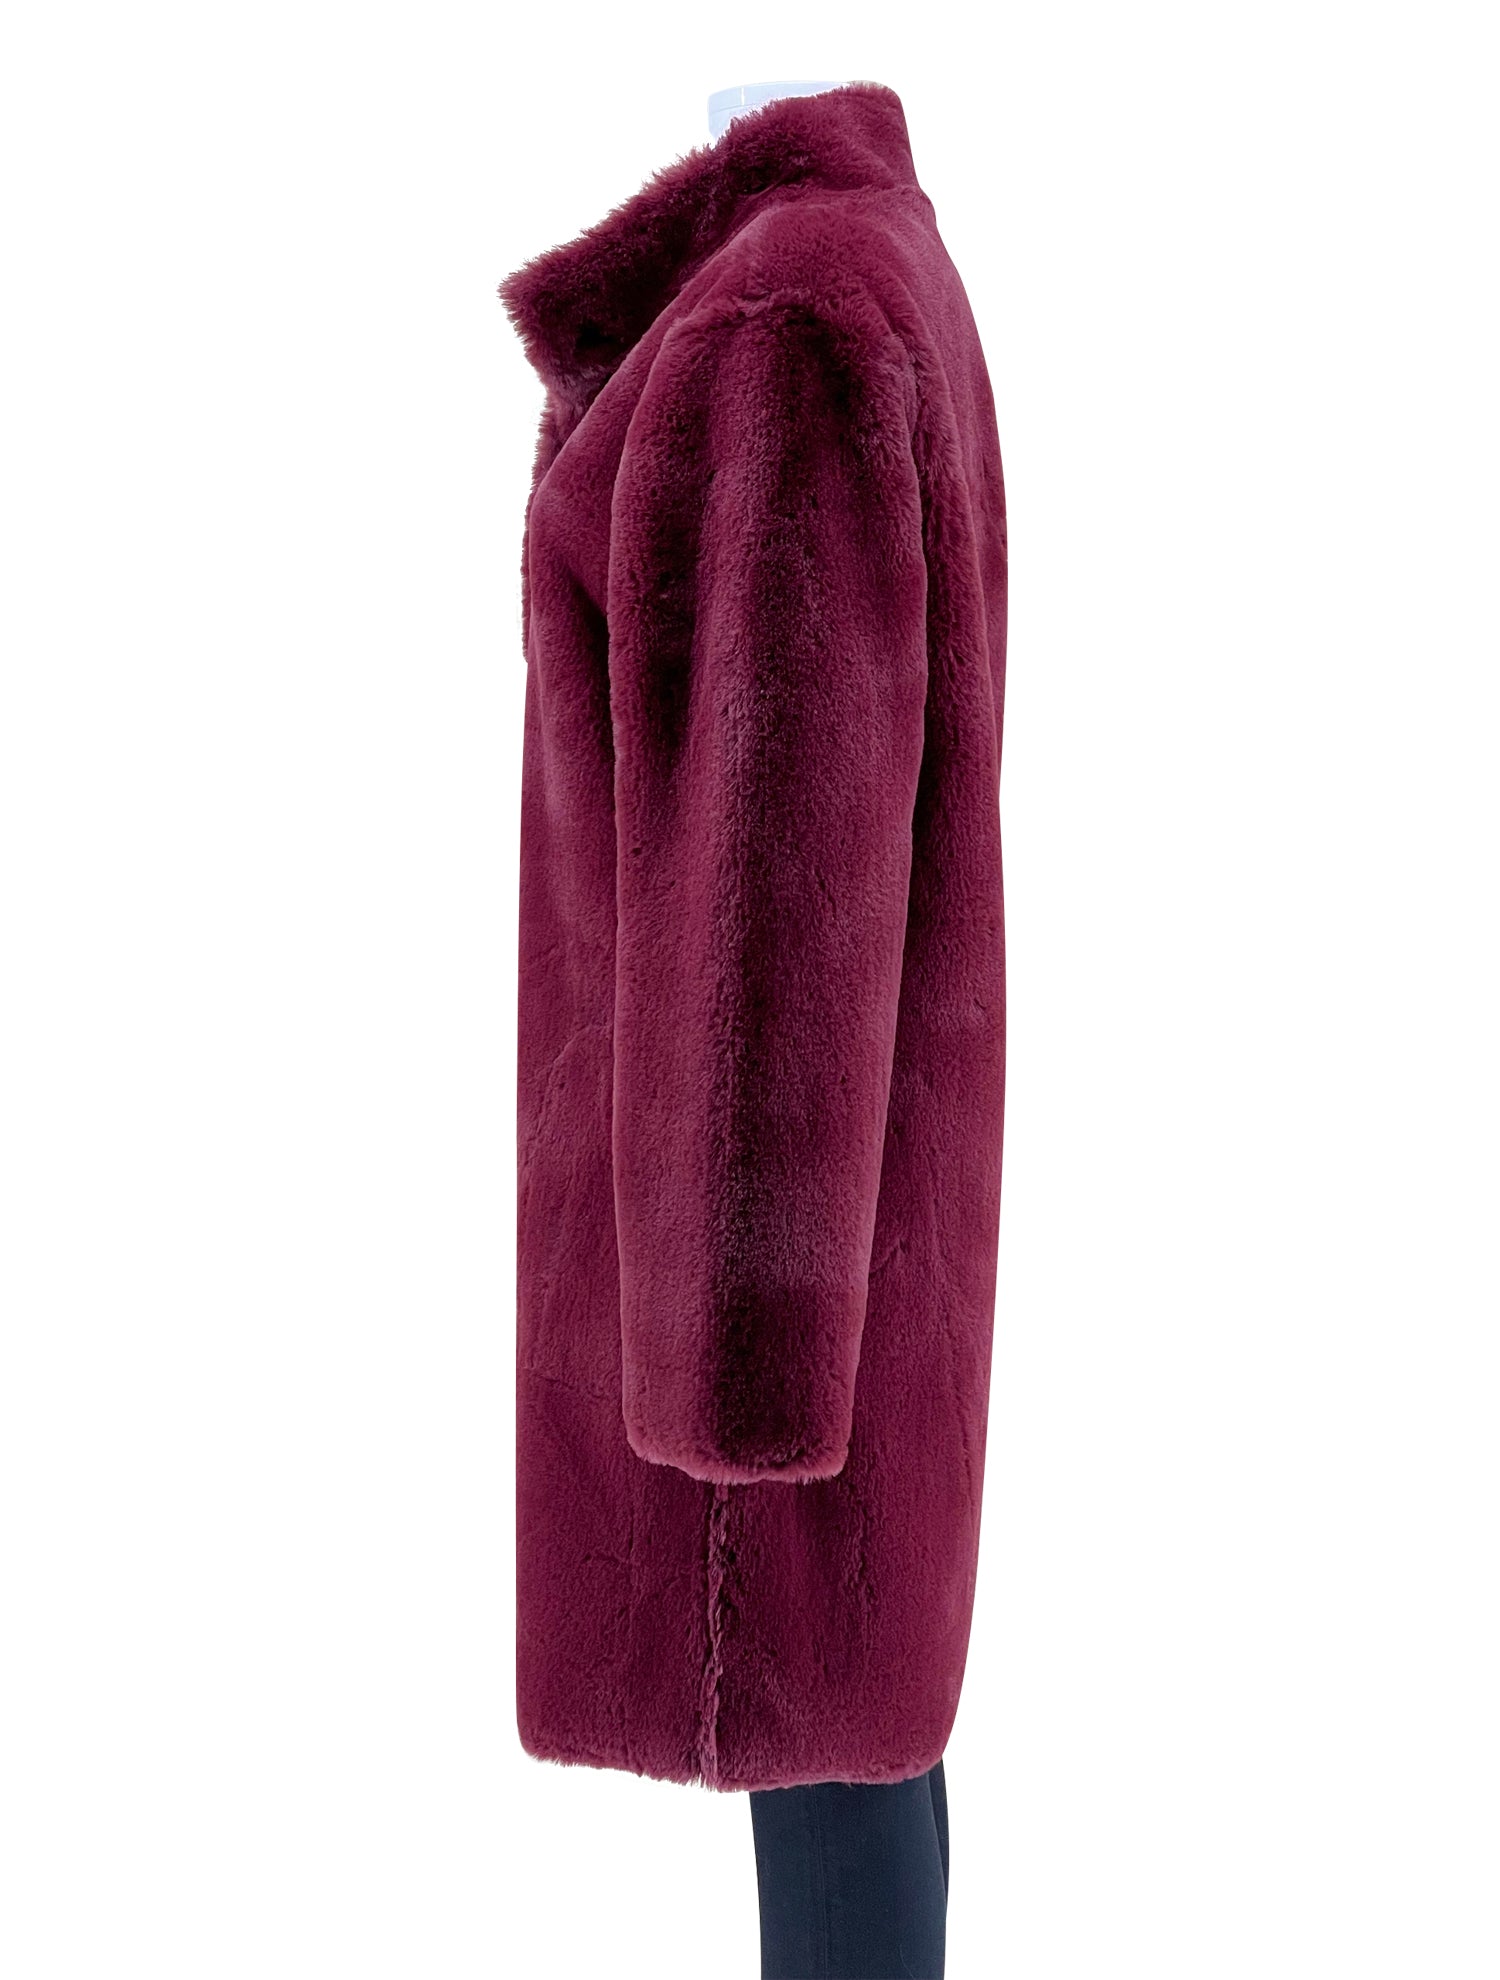 Velvet Faux Fur Dress Coat